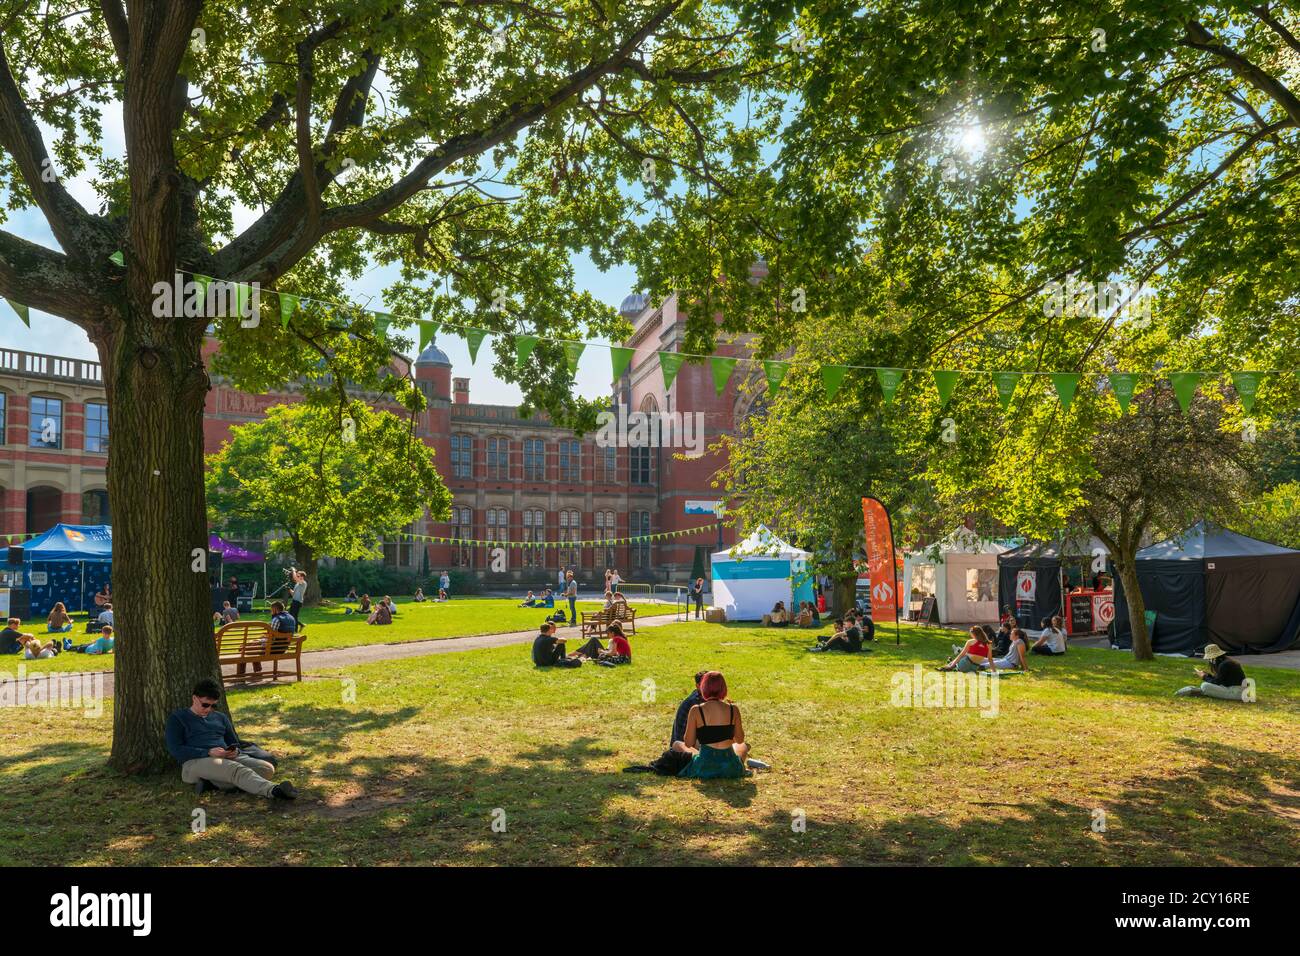 Les étudiants se détendent et se distancer socialement pendant la pandémie Covid-19, au campus de l'Université de Birmingham, lors d'une journée ensoleillée à midi durant la semaine des jeunes. Banque D'Images